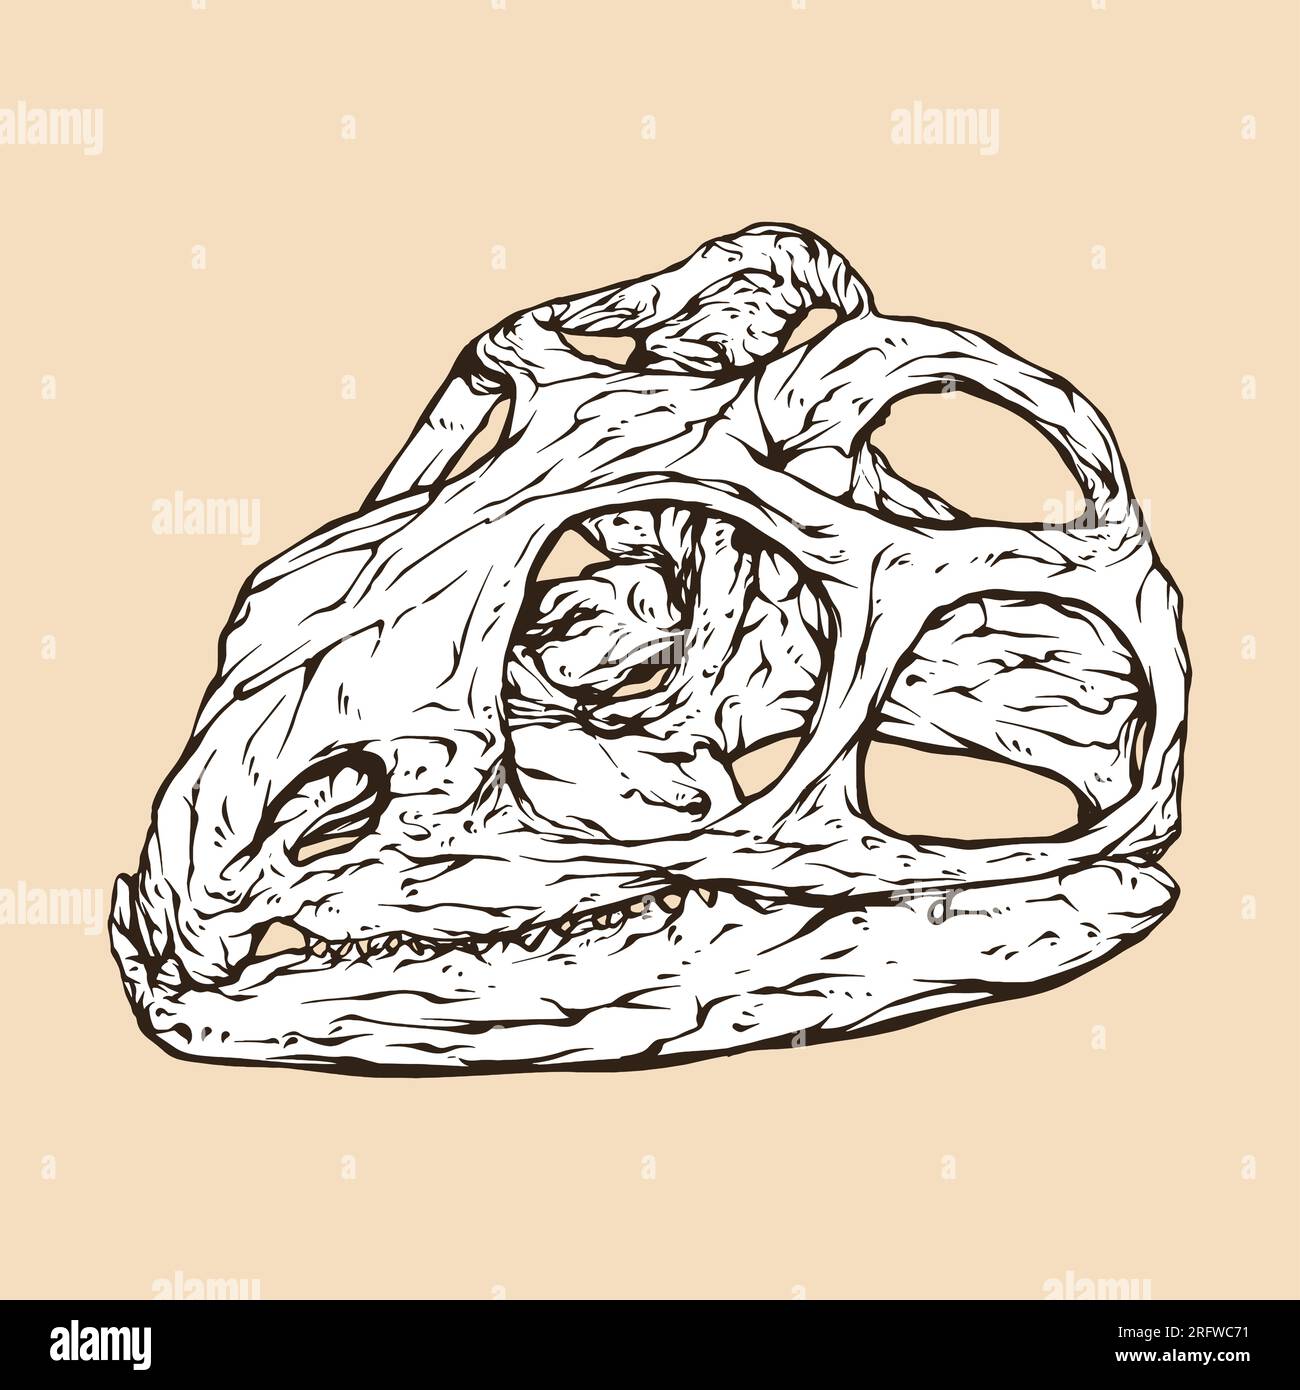 tuatara skull head vector illustration Stock Vector